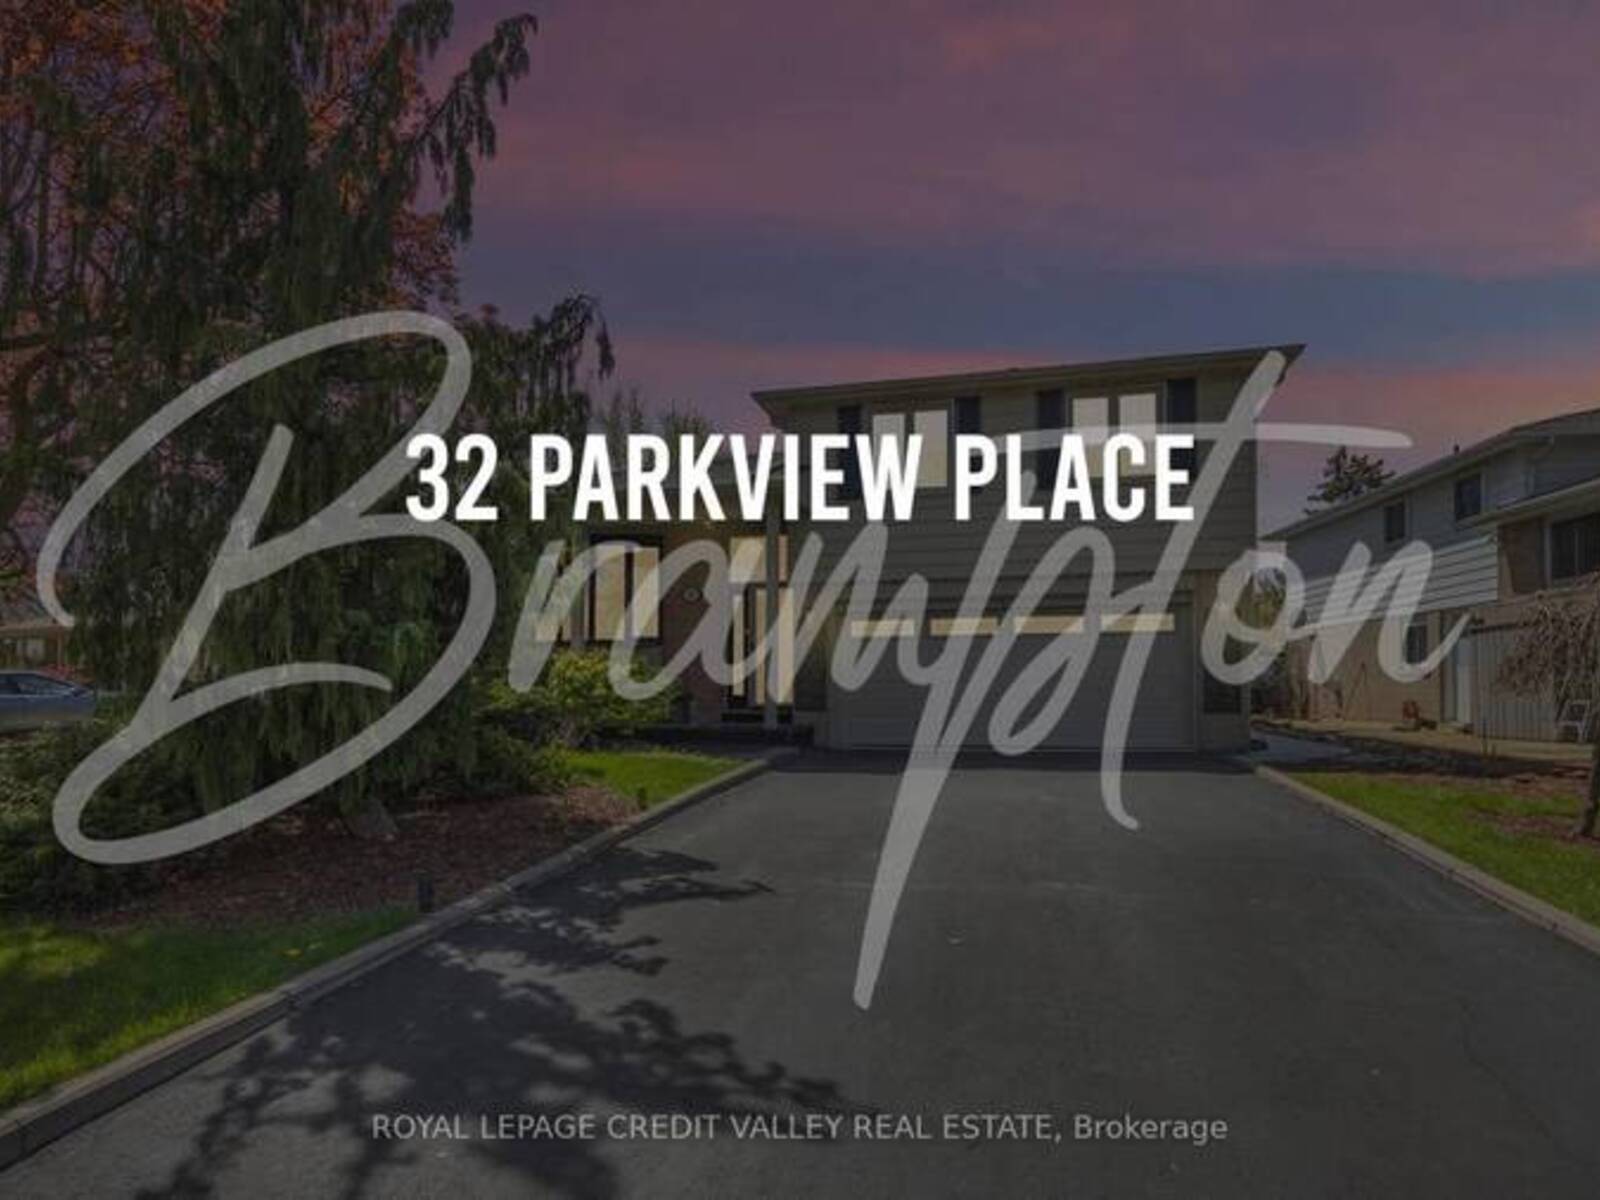 32 PARKVIEW PLACE, Brampton, Ontario L6W 2G3